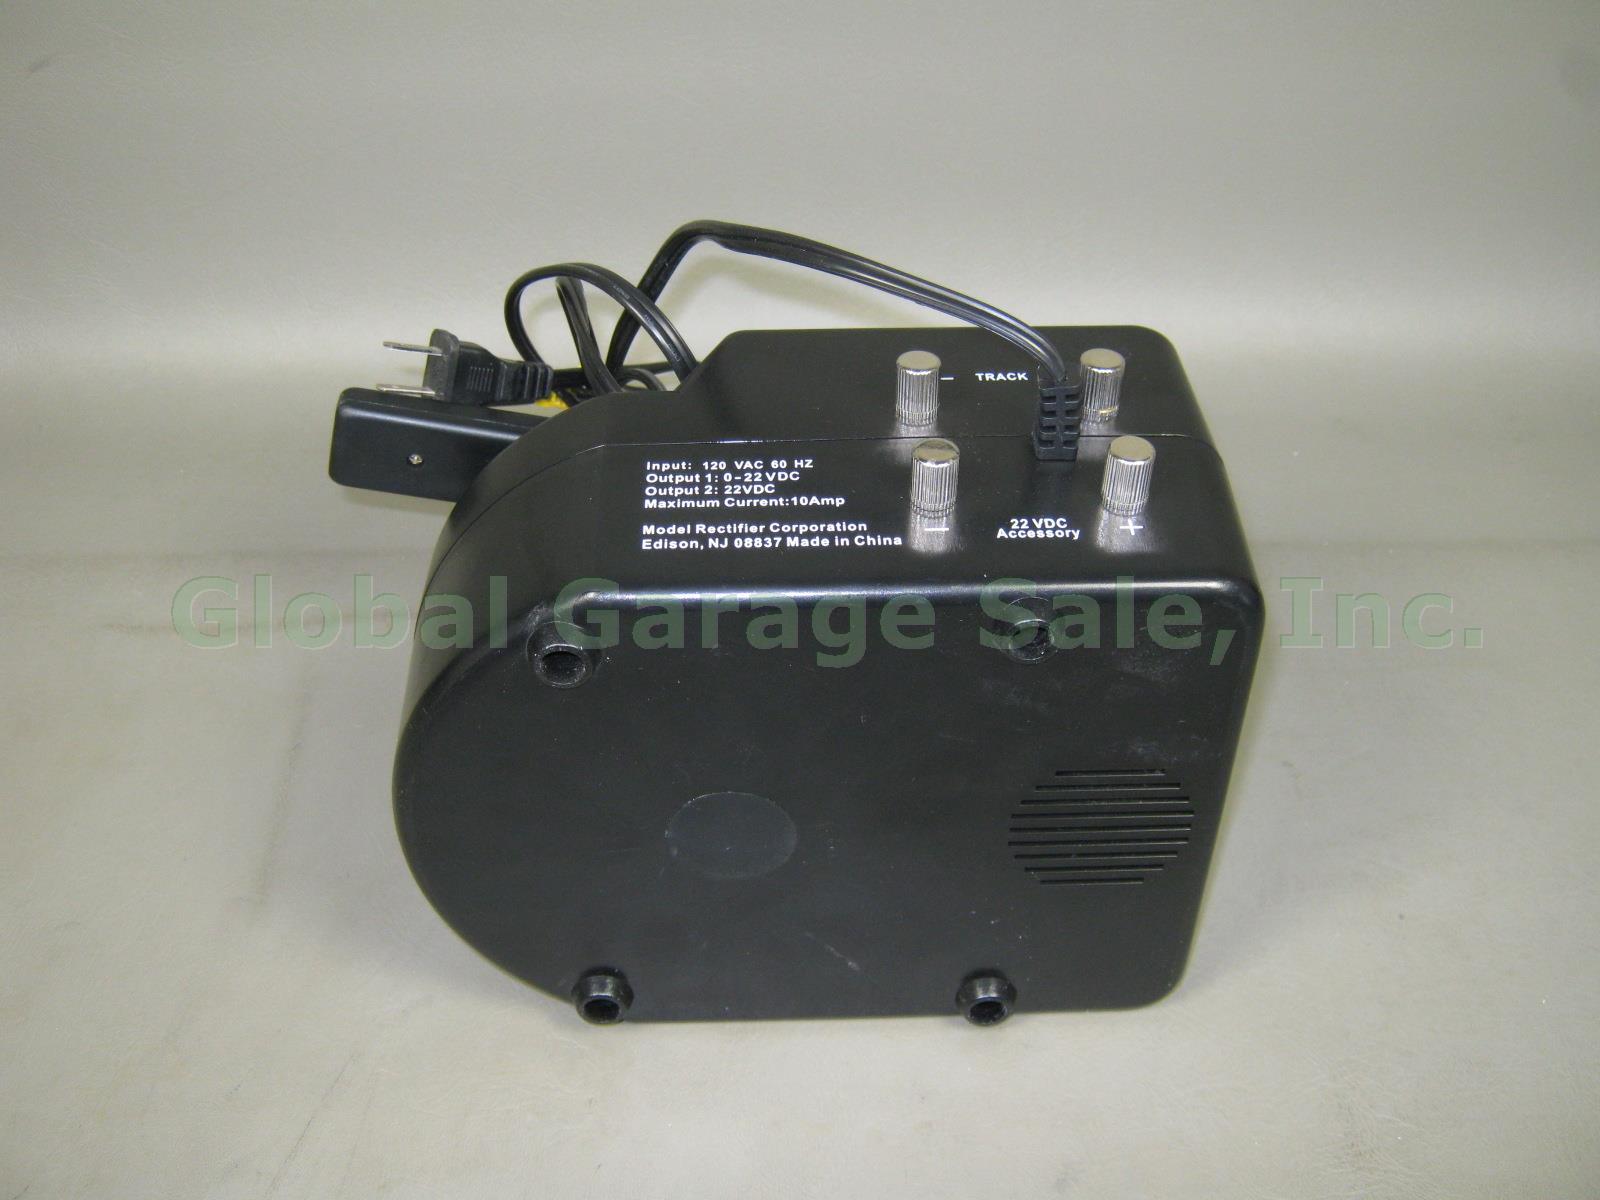 Model Rectifier Corporation MRC Power G AG 990 10 Amp DC Power Pack Transformer 3